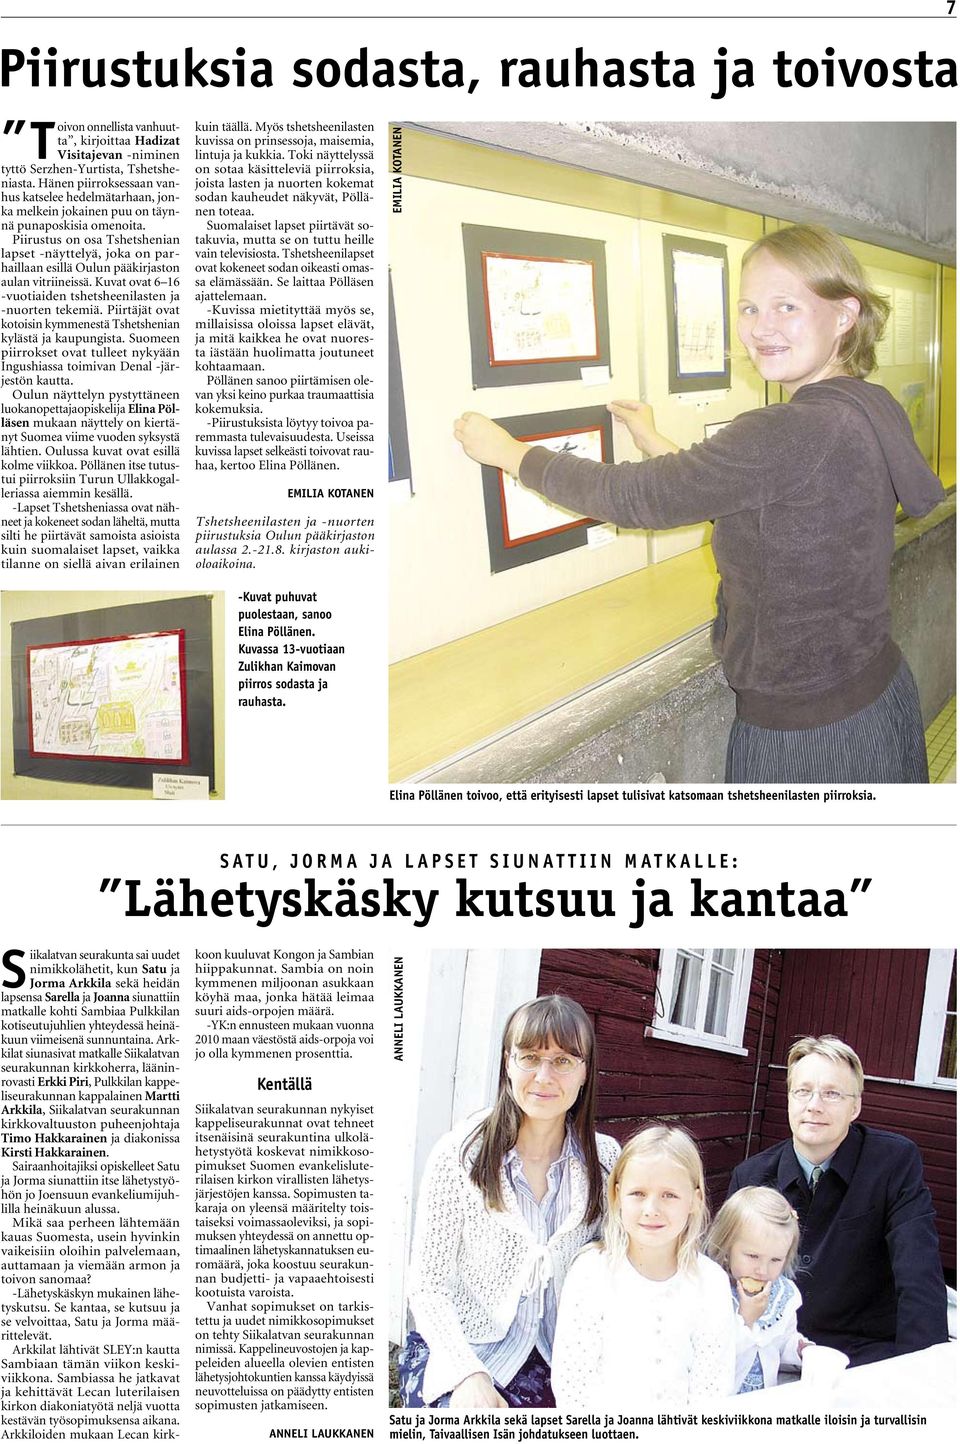 Piirustus on osa Tshetshenian lapset -näyttelyä, joka on parhaillaan esillä Oulun pääkirjaston aulan vitriineissä. Kuvat ovat 6 16 -vuotiaiden tshetsheenilasten ja -nuorten tekemiä.